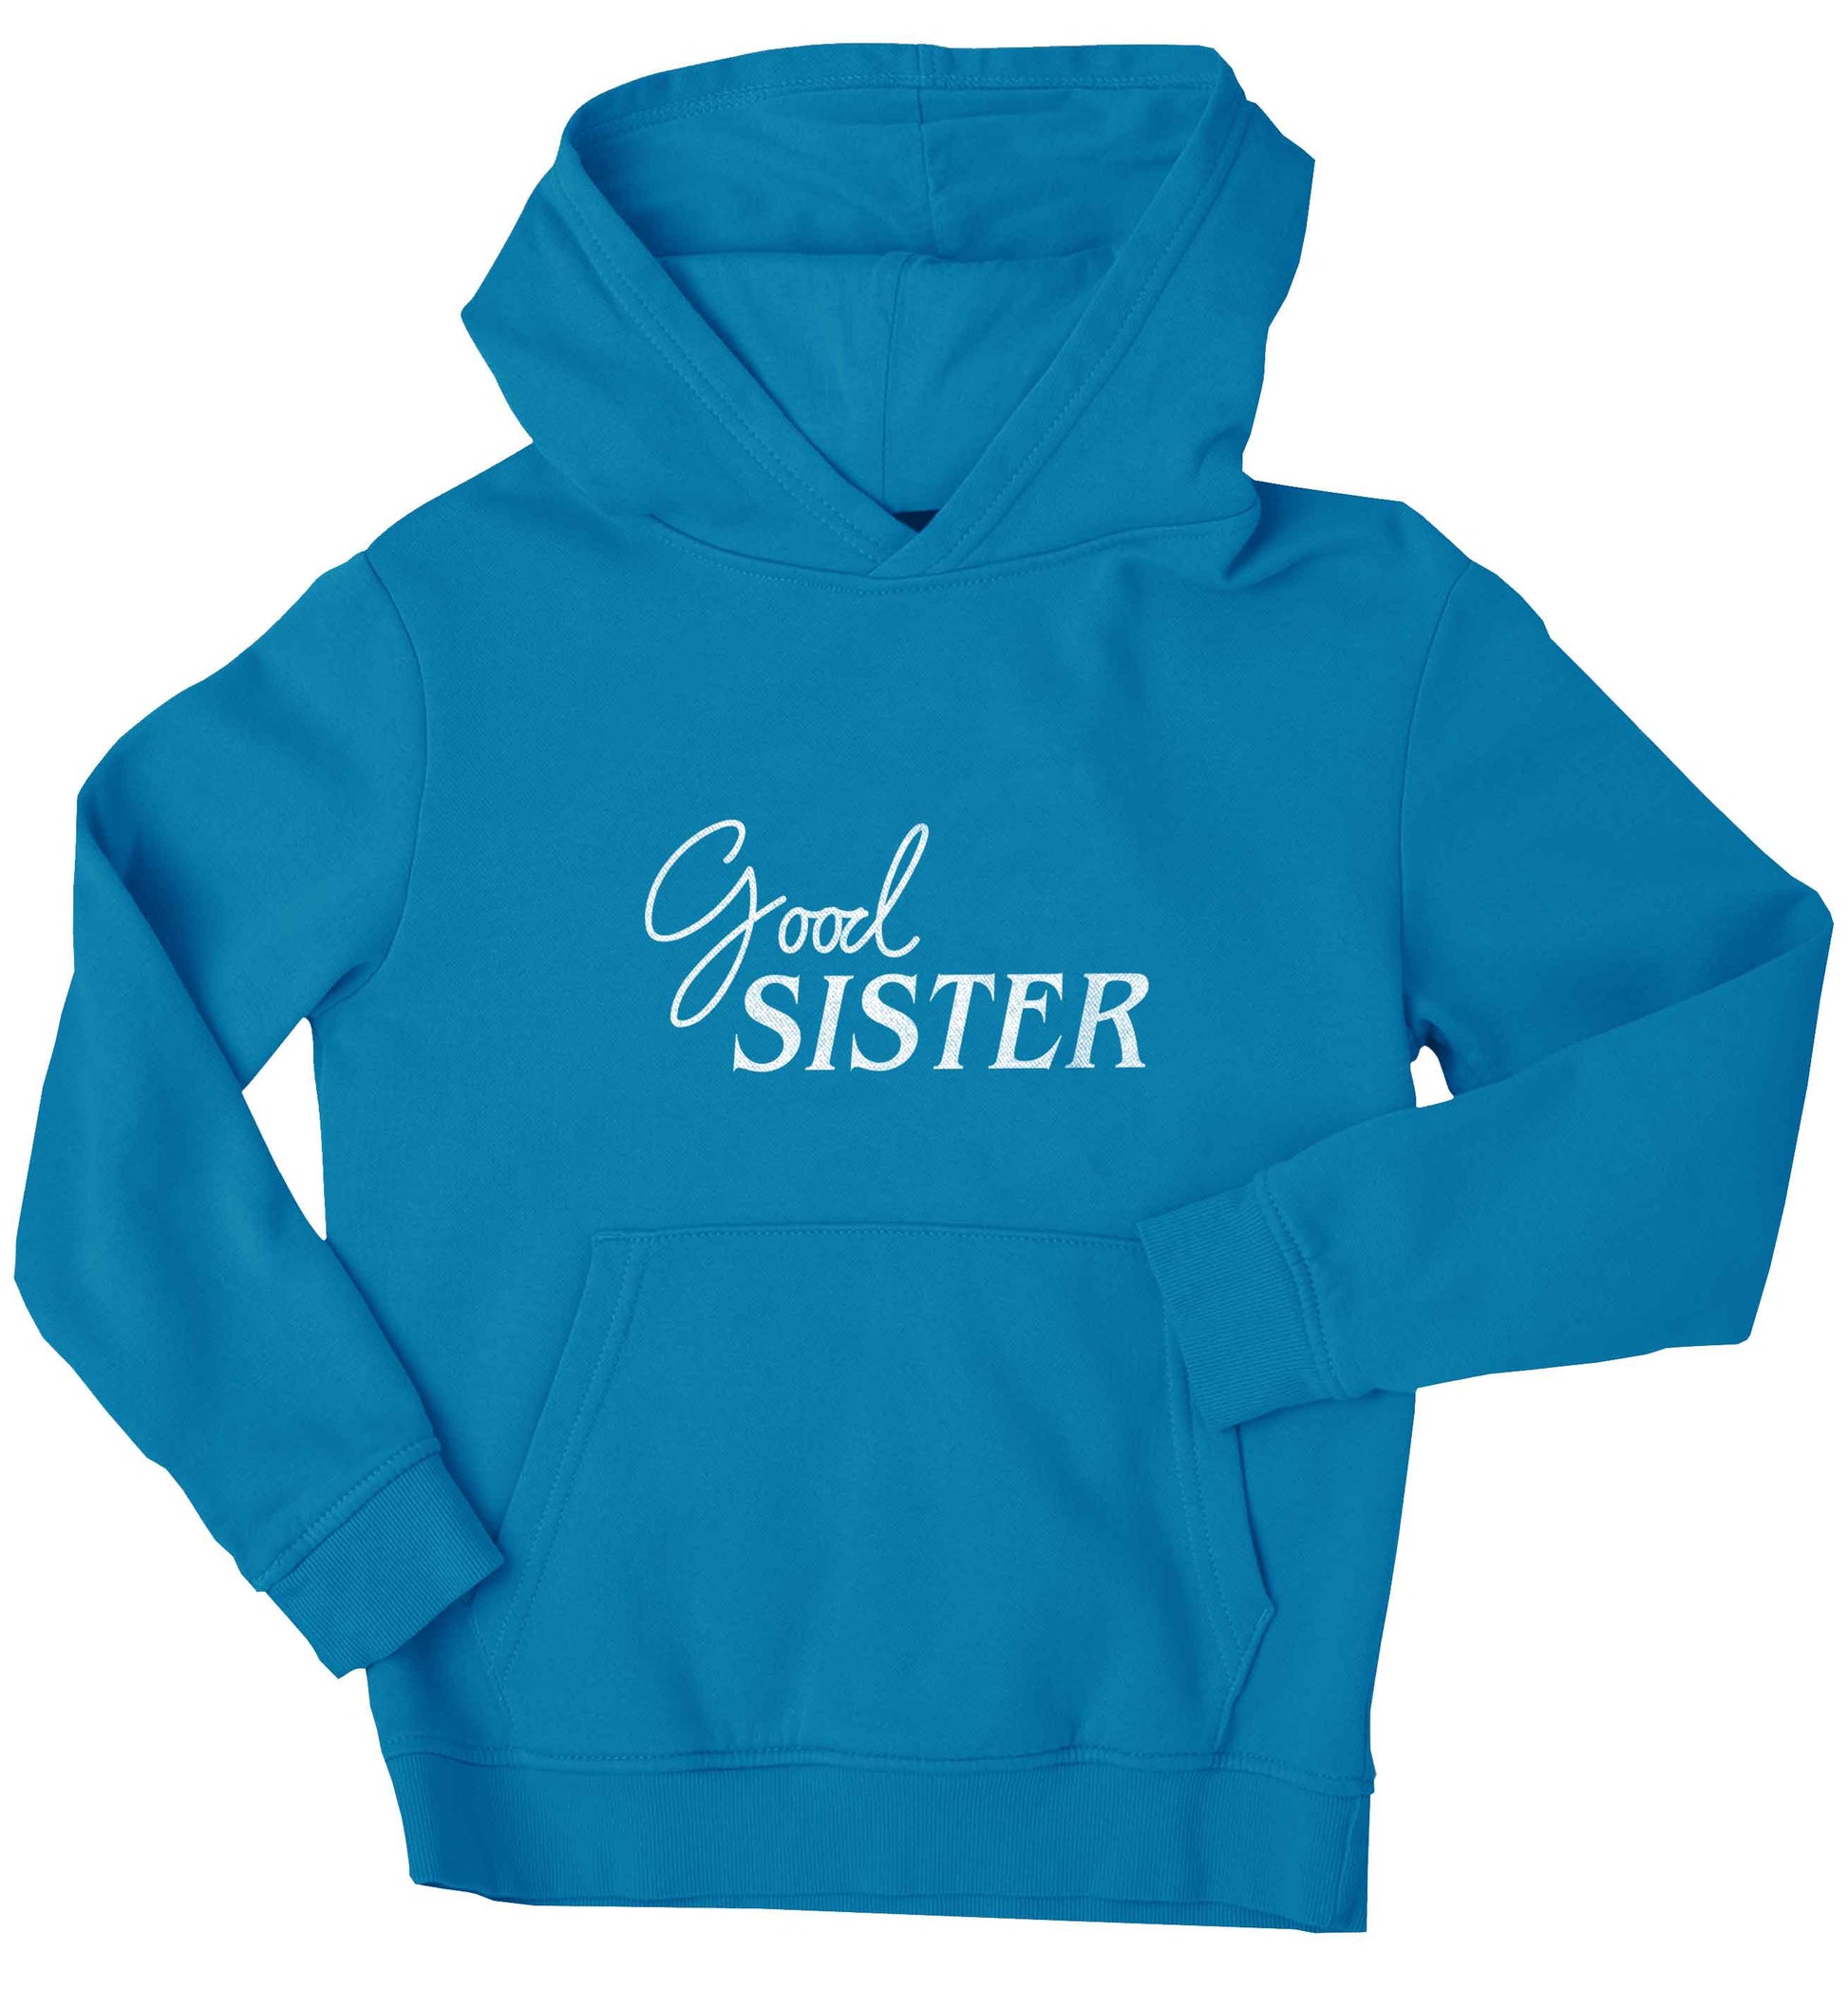 Good sister children's blue hoodie 12-13 Years